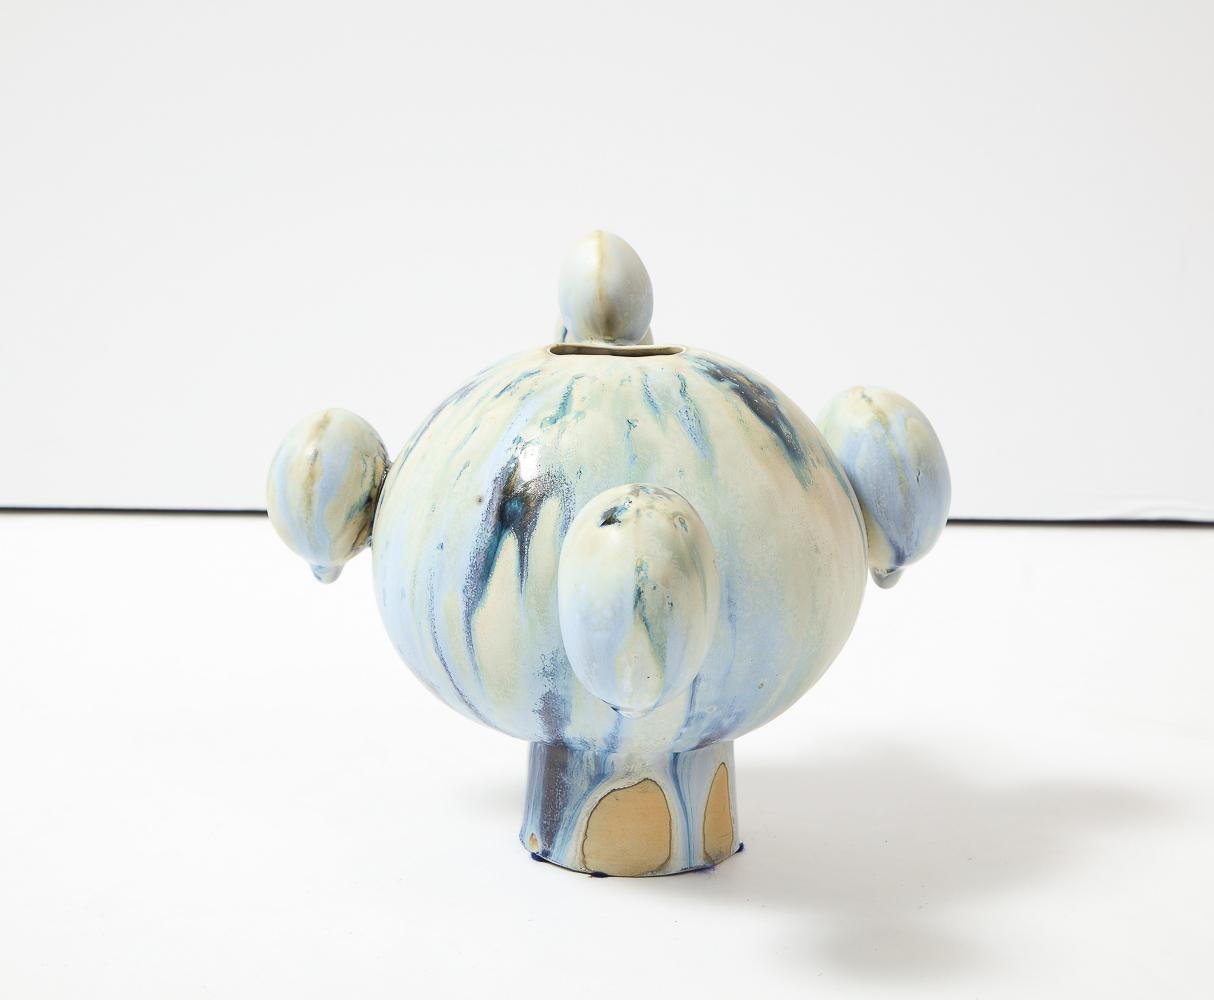 Glasiertes Porzellan.  Kugelförmige Vase mit Fuß und aufgesetzten runden Formen. Blaue und grüne Glasuren.  Auf der Unterseite vom Künstler signiert.